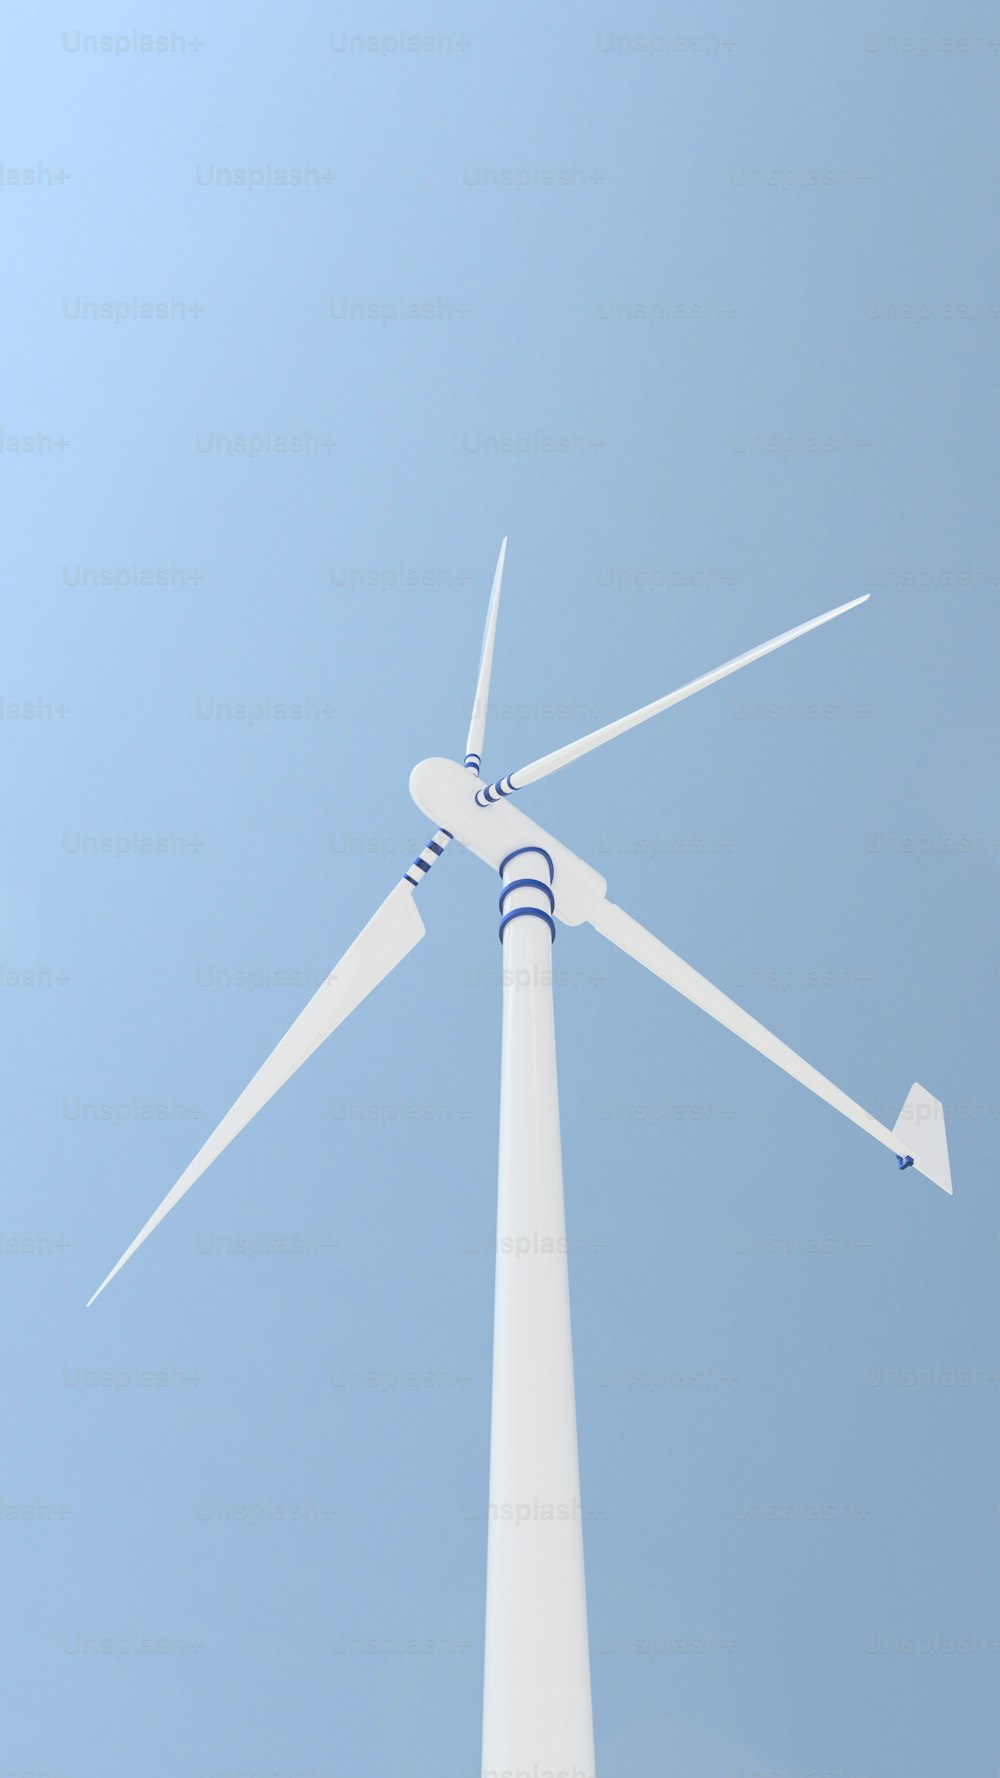 Eine Windkraftanlage wird vor blauem Himmel gezeigt